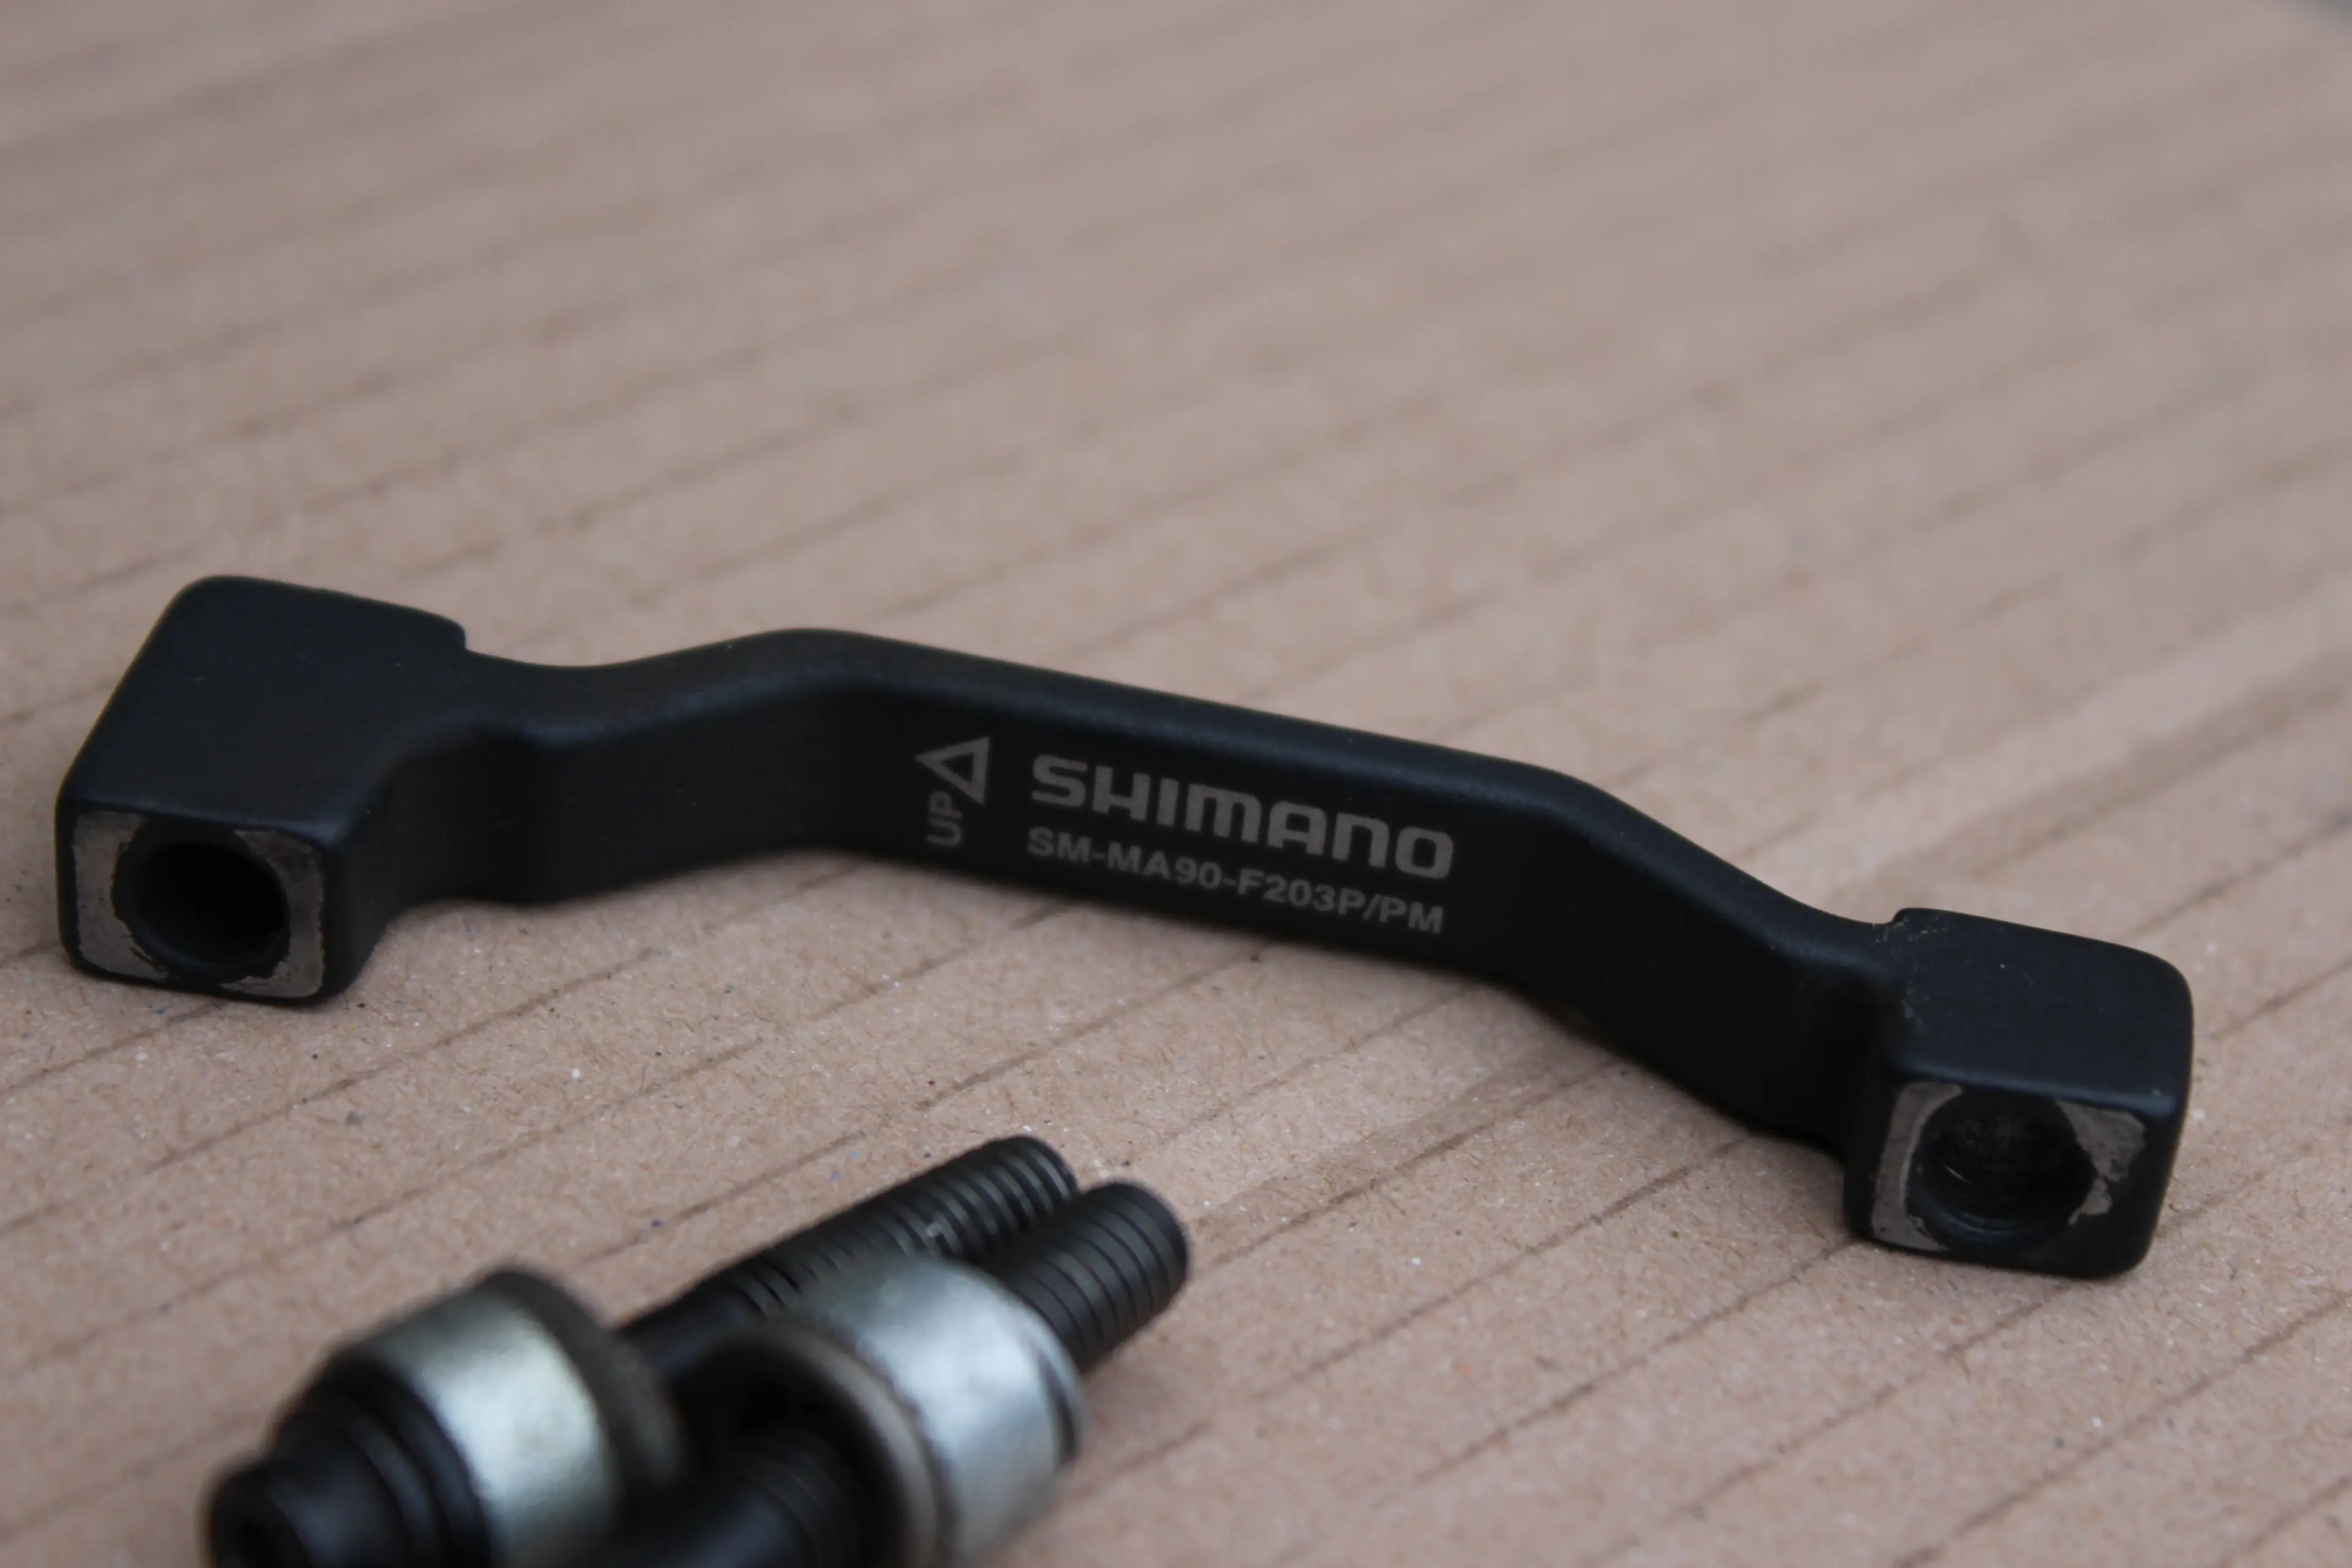 2. Shimano SM-MA90-F203P/PM Adaptor fata de la 180mm la 203mm